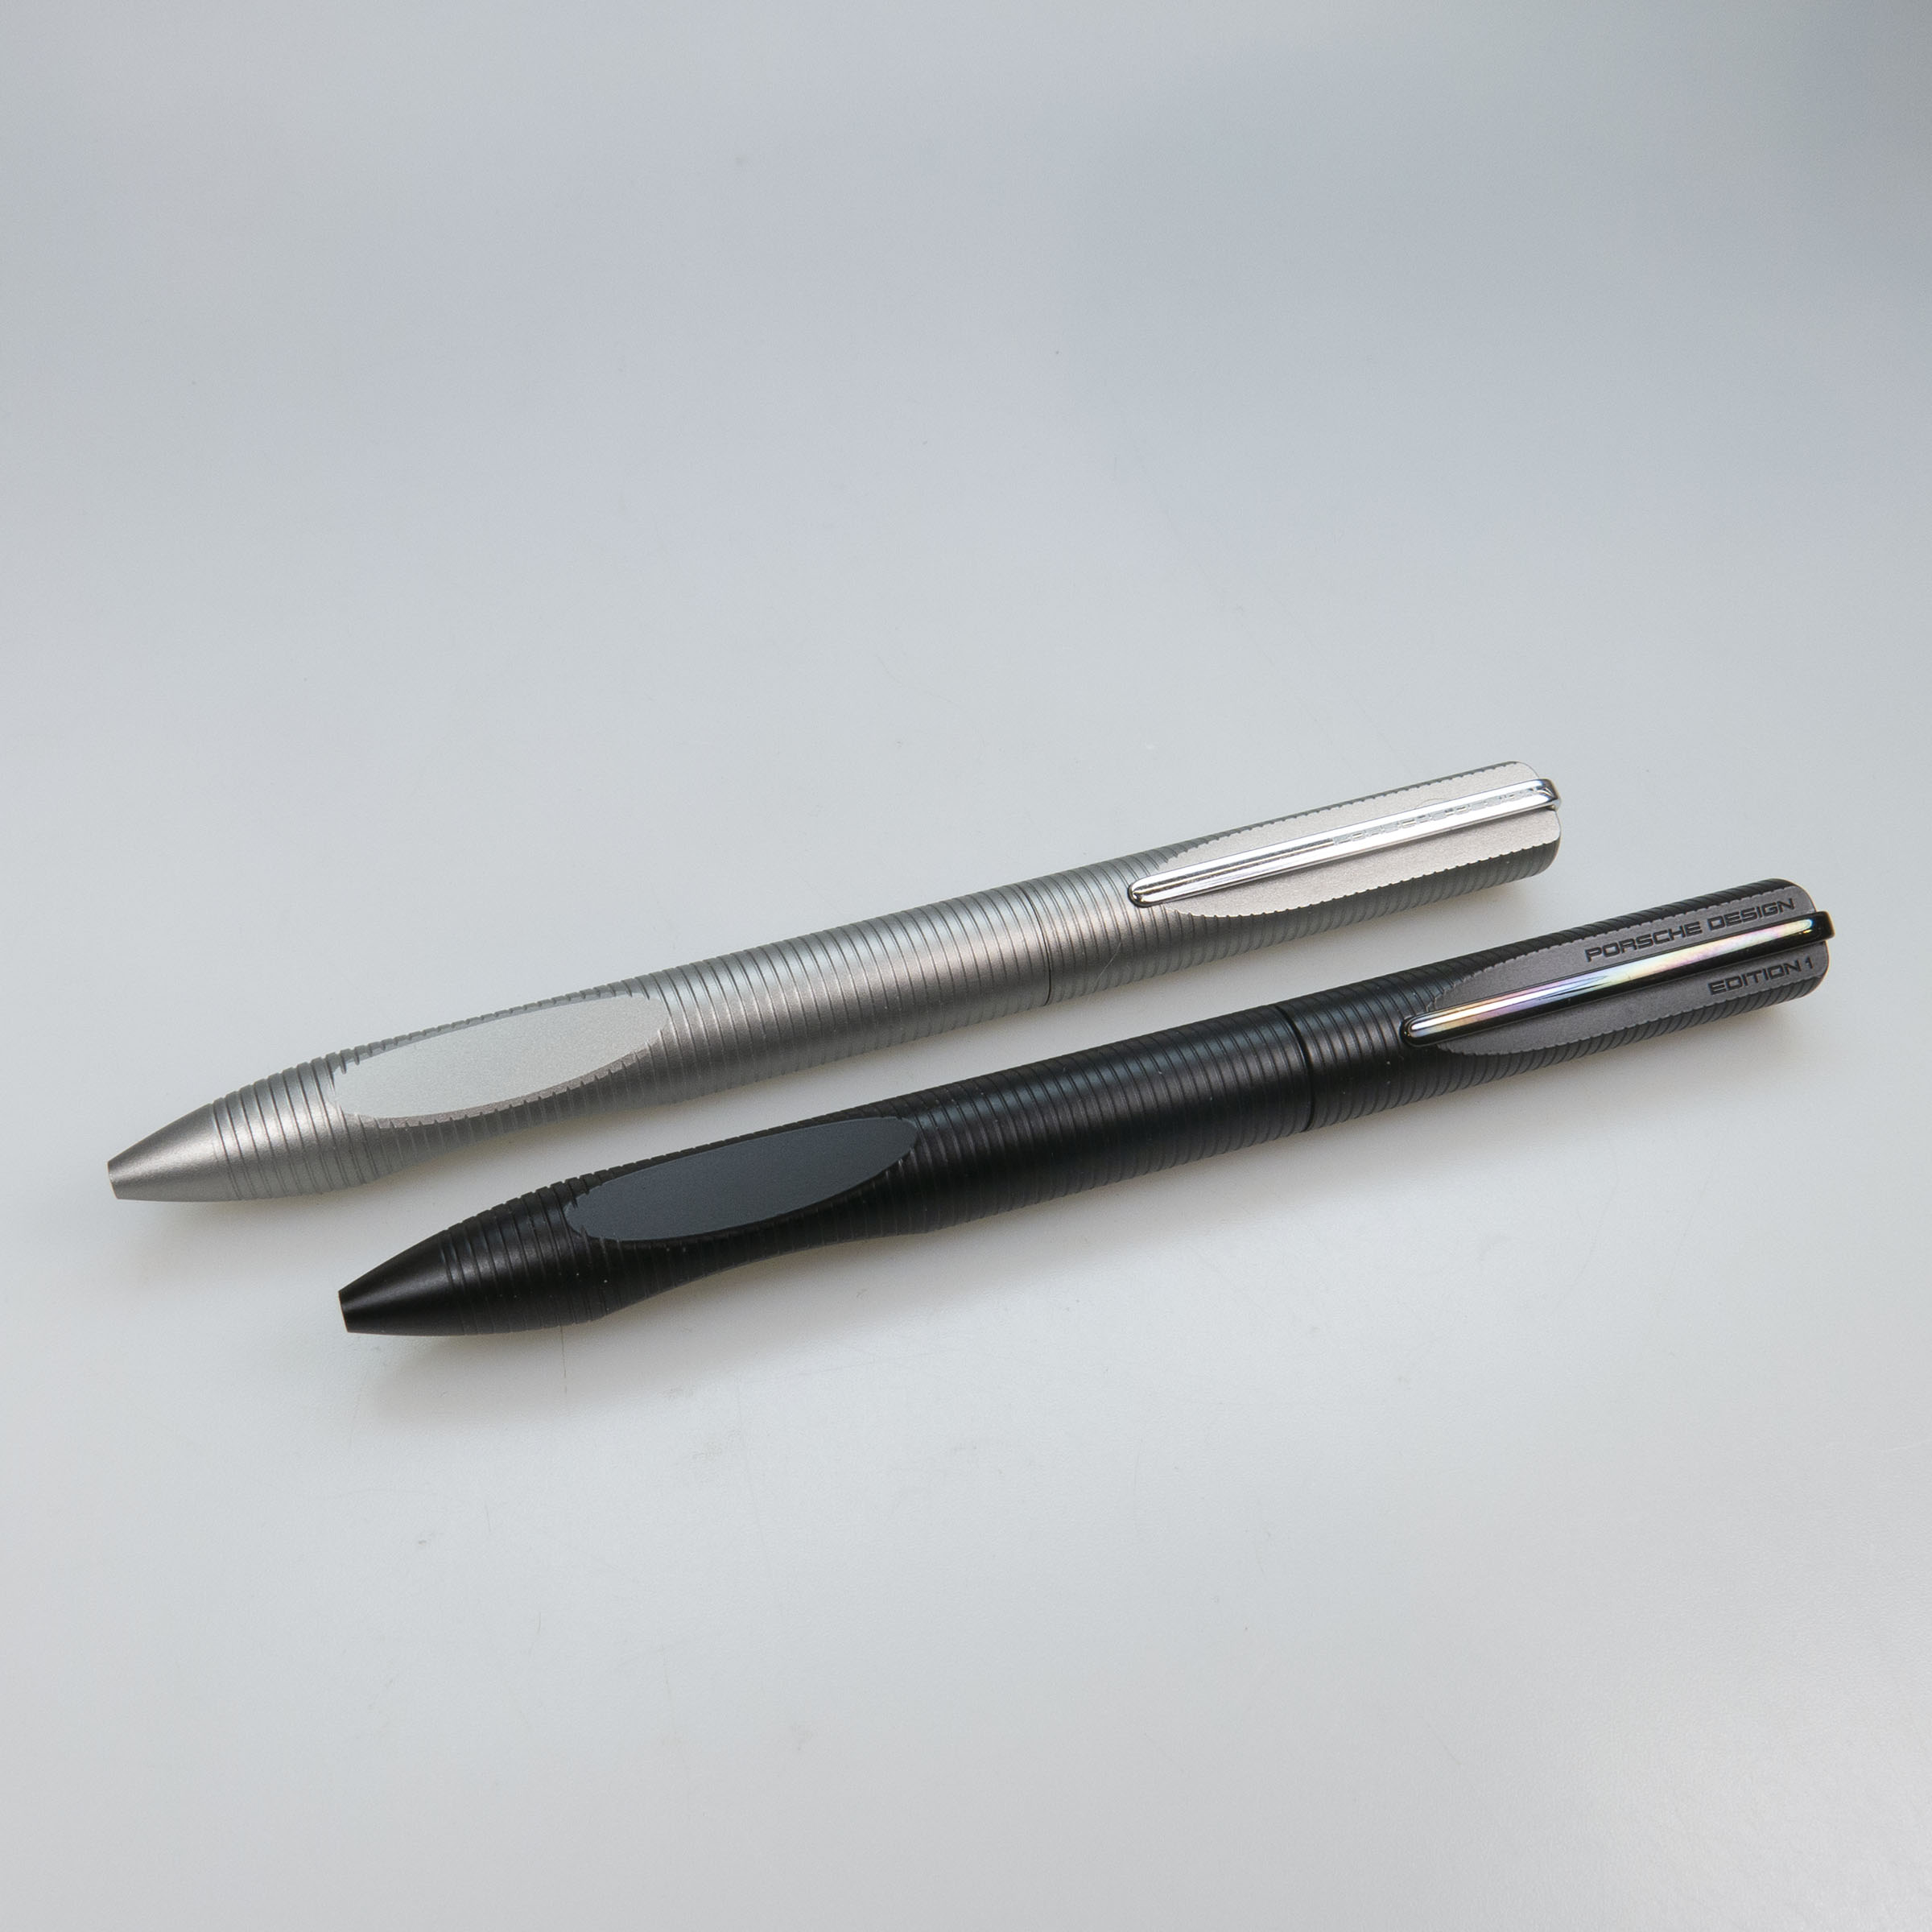 2 Porsche Design P3120 Edition 1 Ballpoint Pens